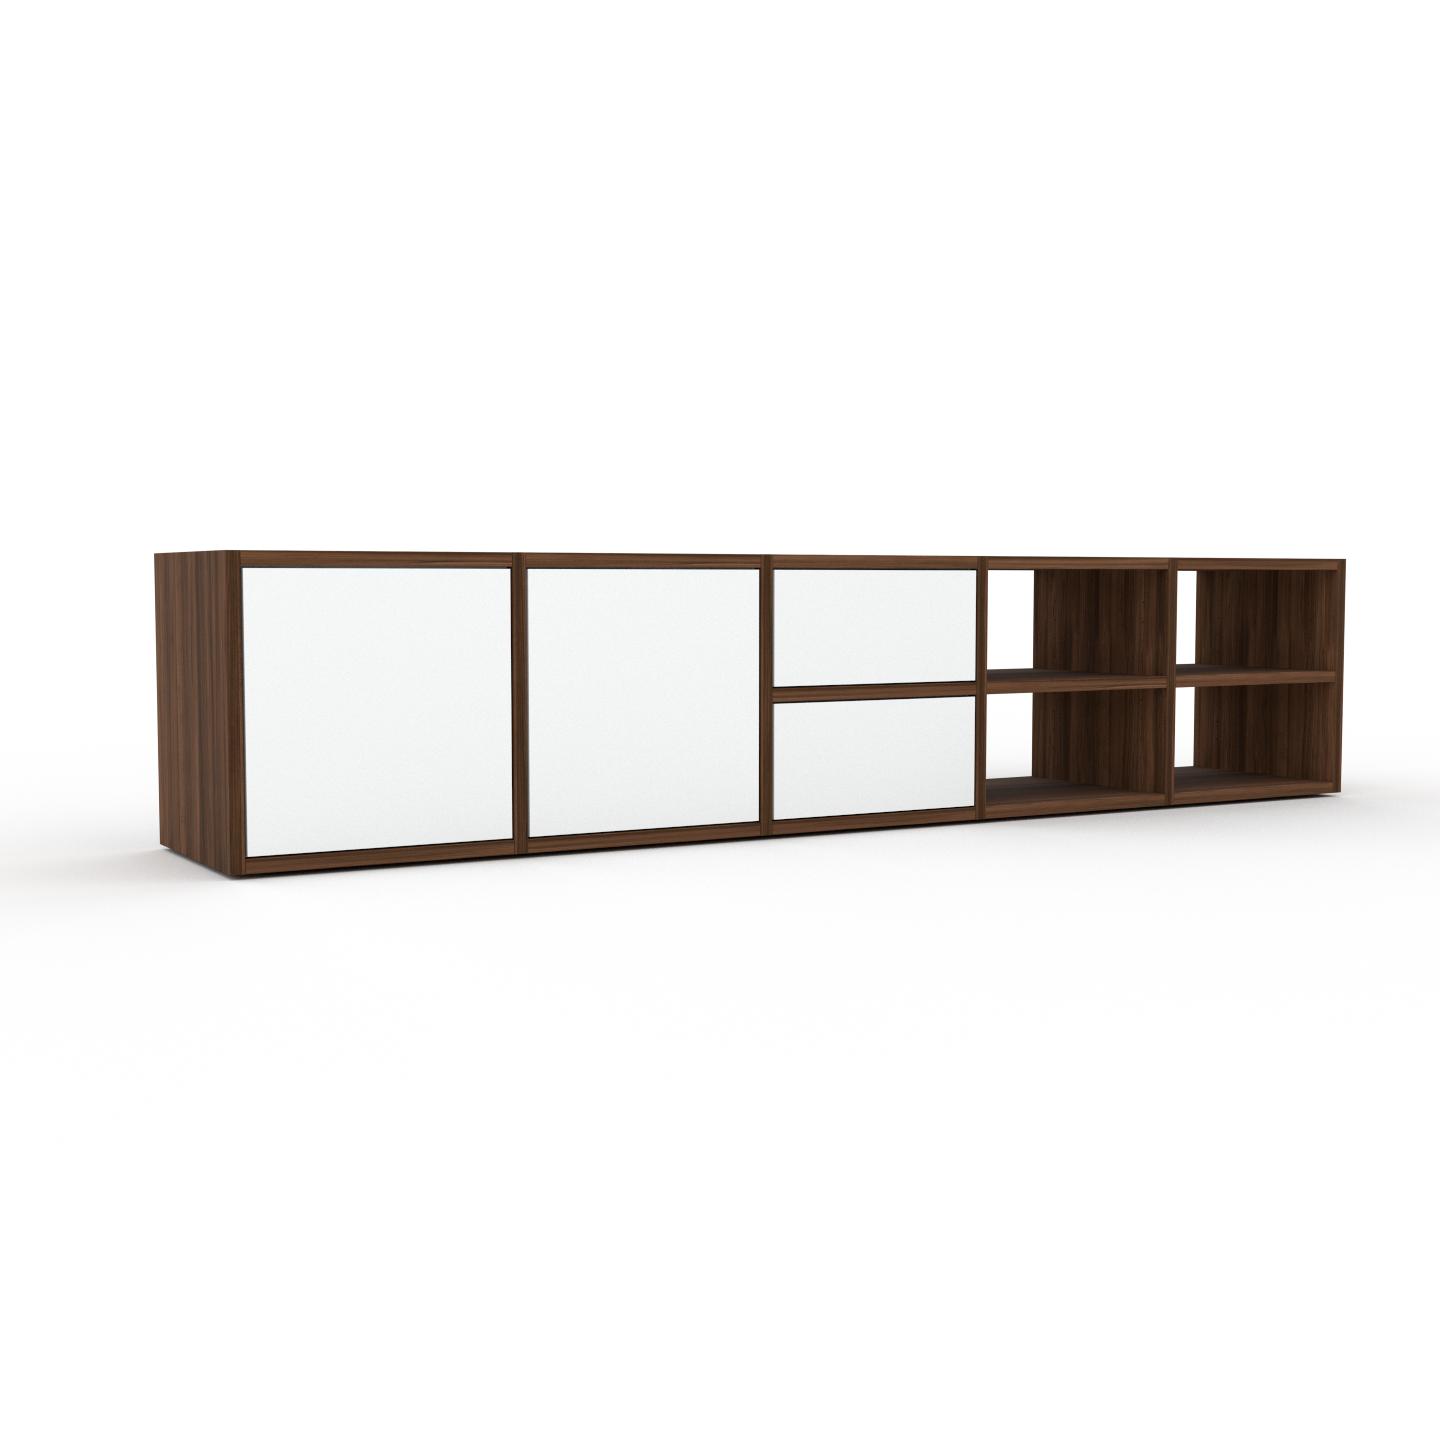 MYCS Lowboard Weiß - TV-Board: Schubladen in Weiß & Türen in Weiß - Hochwertige Materialien - 195 x 41 x 35 cm, Komplett anpassbar